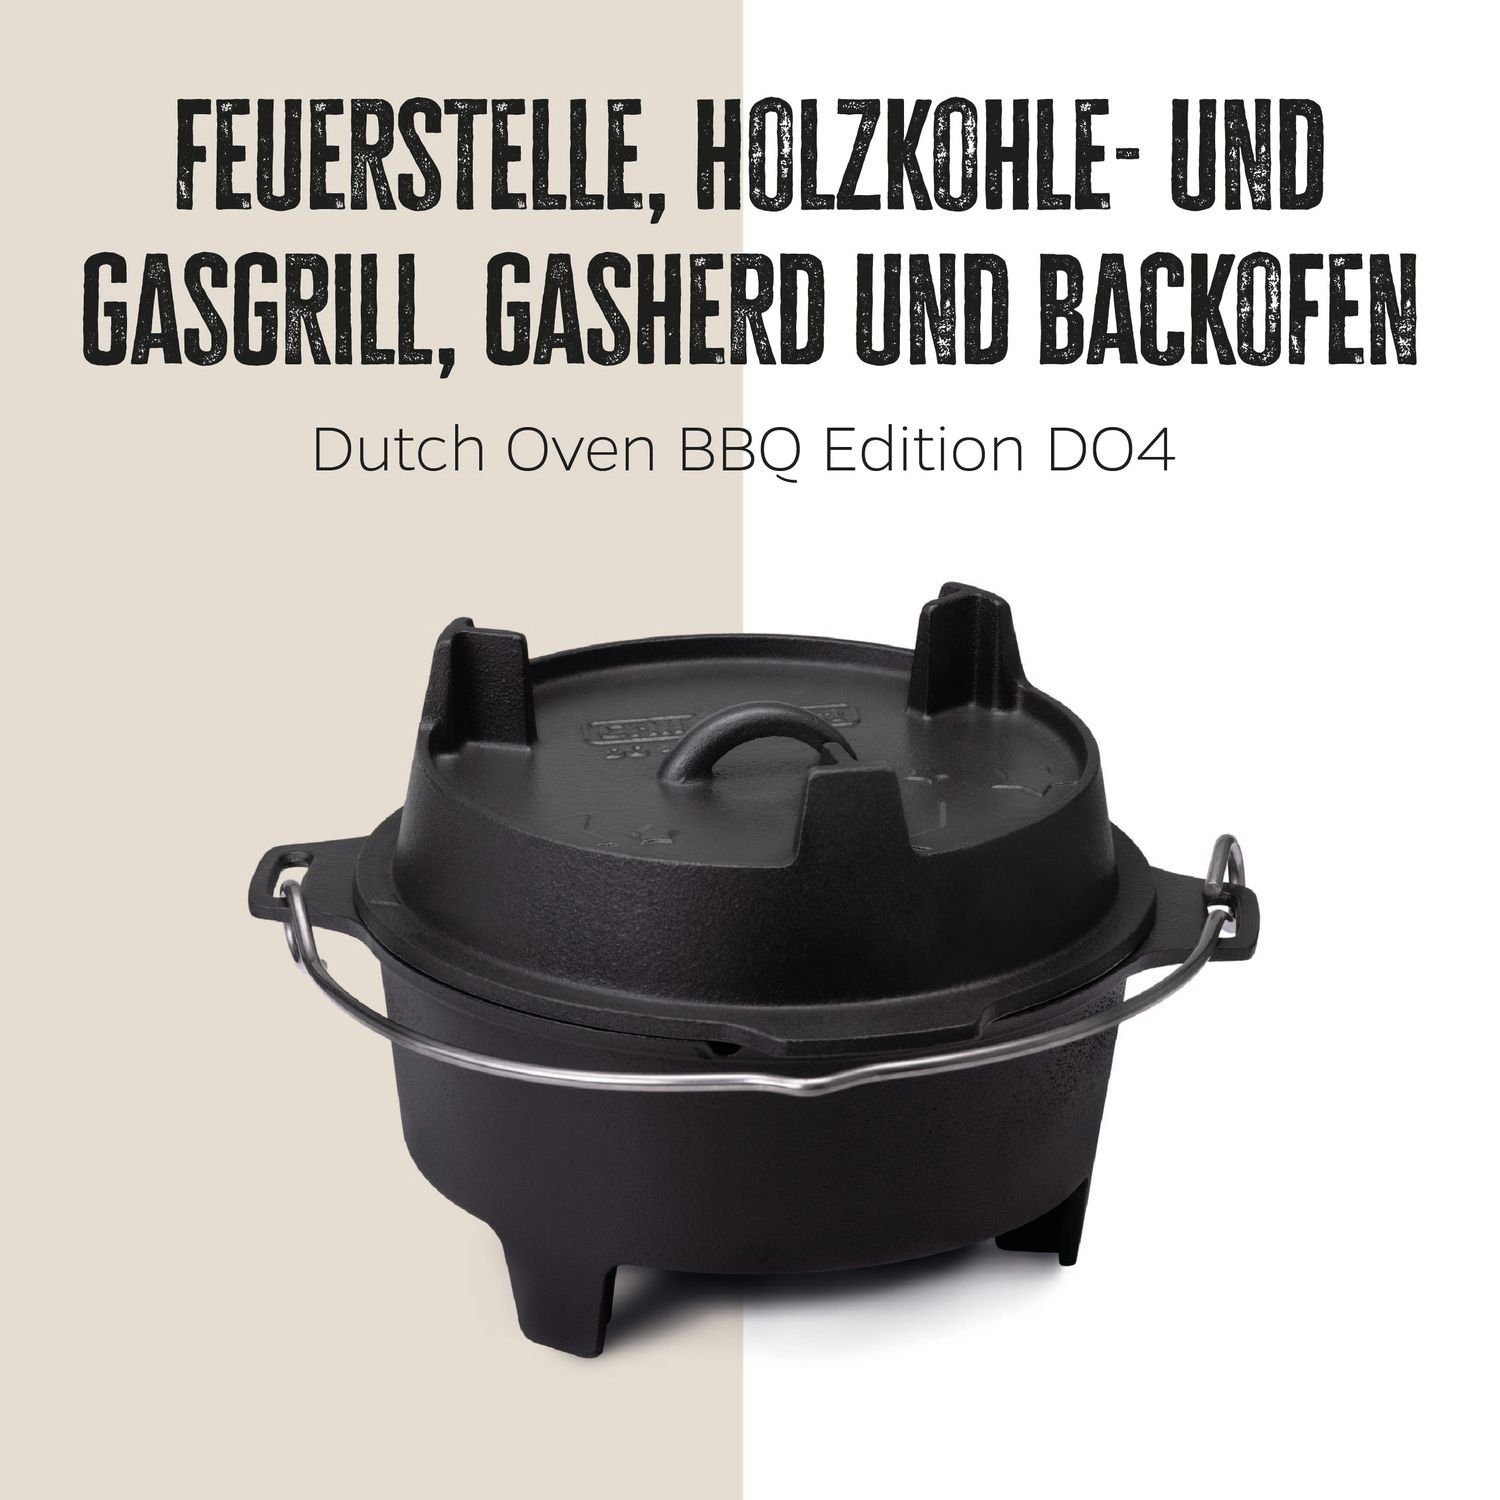 Edition Oven BBQ Grillfürst Bratentopf Grillfürst Dutch DO4